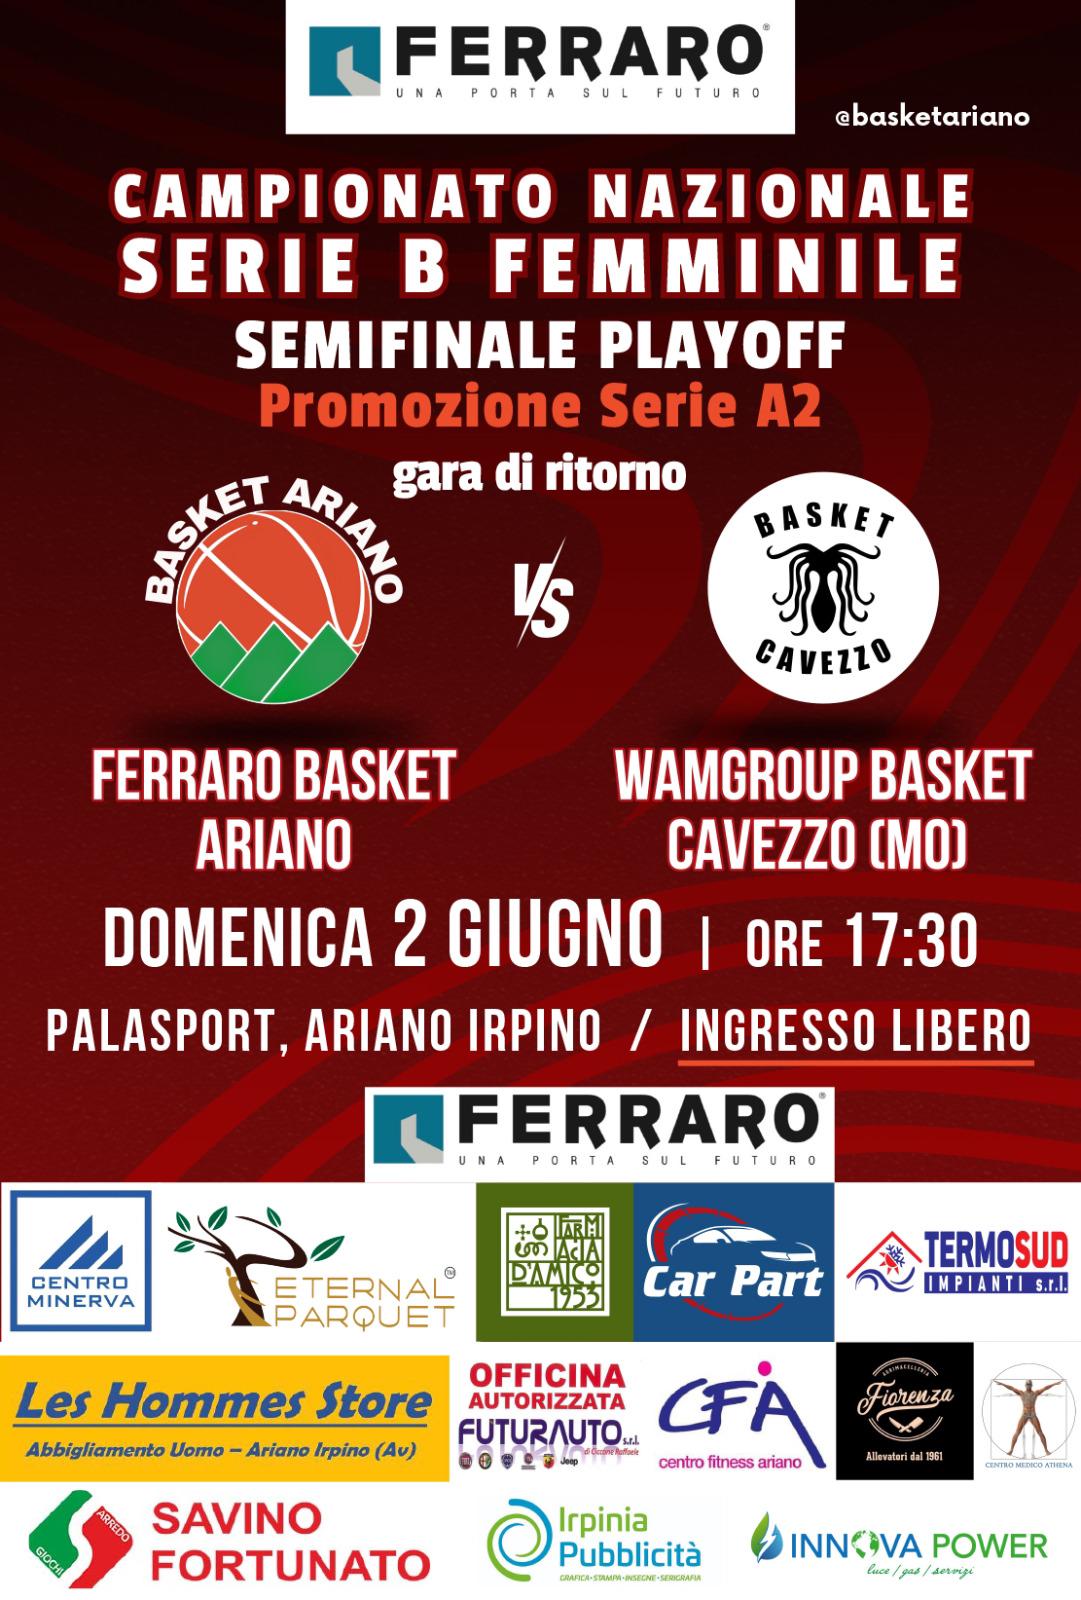 Forza Virtus! Eternal Parquet Sponsor della Virtus Basket Ariano Irpino